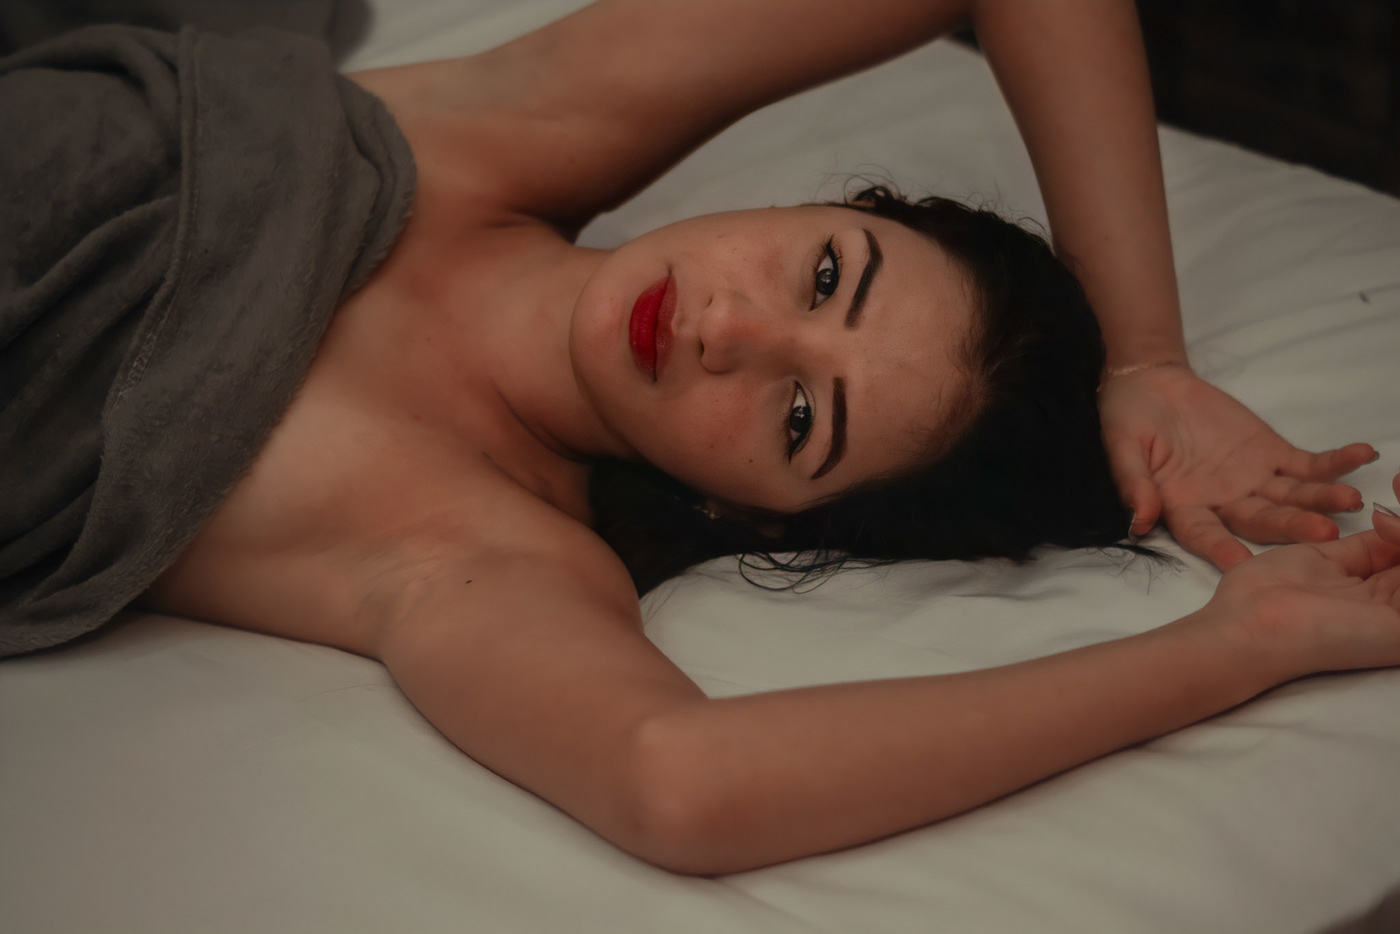 ensaio feminino Ensaio interno ensaio intimista Ensaio Sensual Fotografia lightroom Nikon